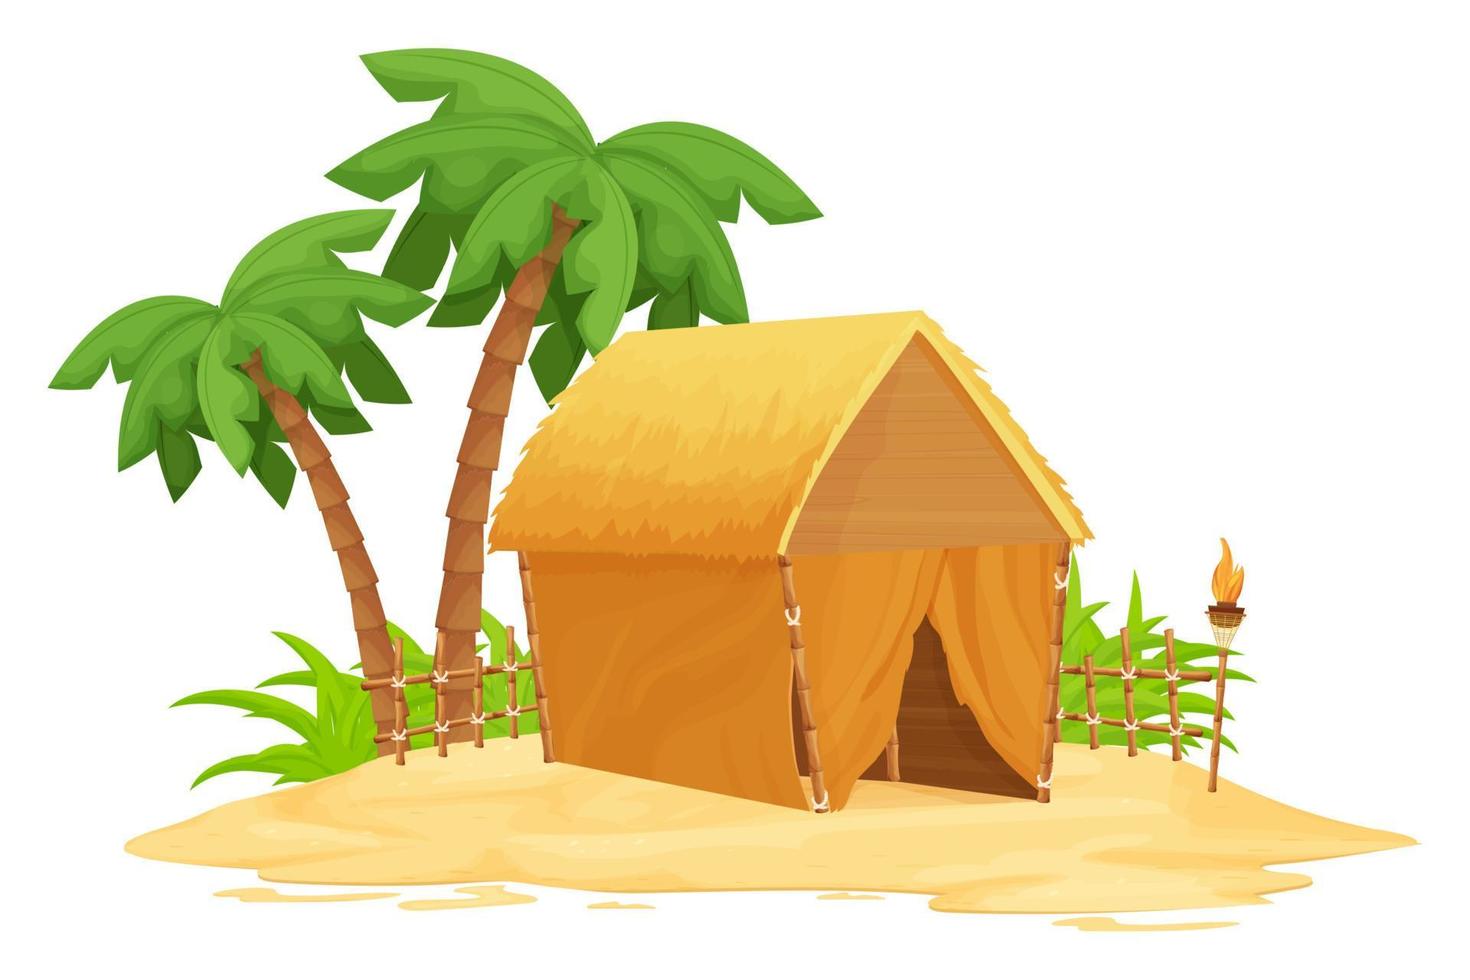 strand bungalow, tiki hut met stro dak, bamboe en houten details op zand in cartoon stijl geïsoleerd op een witte achtergrond. fantasie gebouw met palmbomen, fakkel. reisconcept. vector illustratie